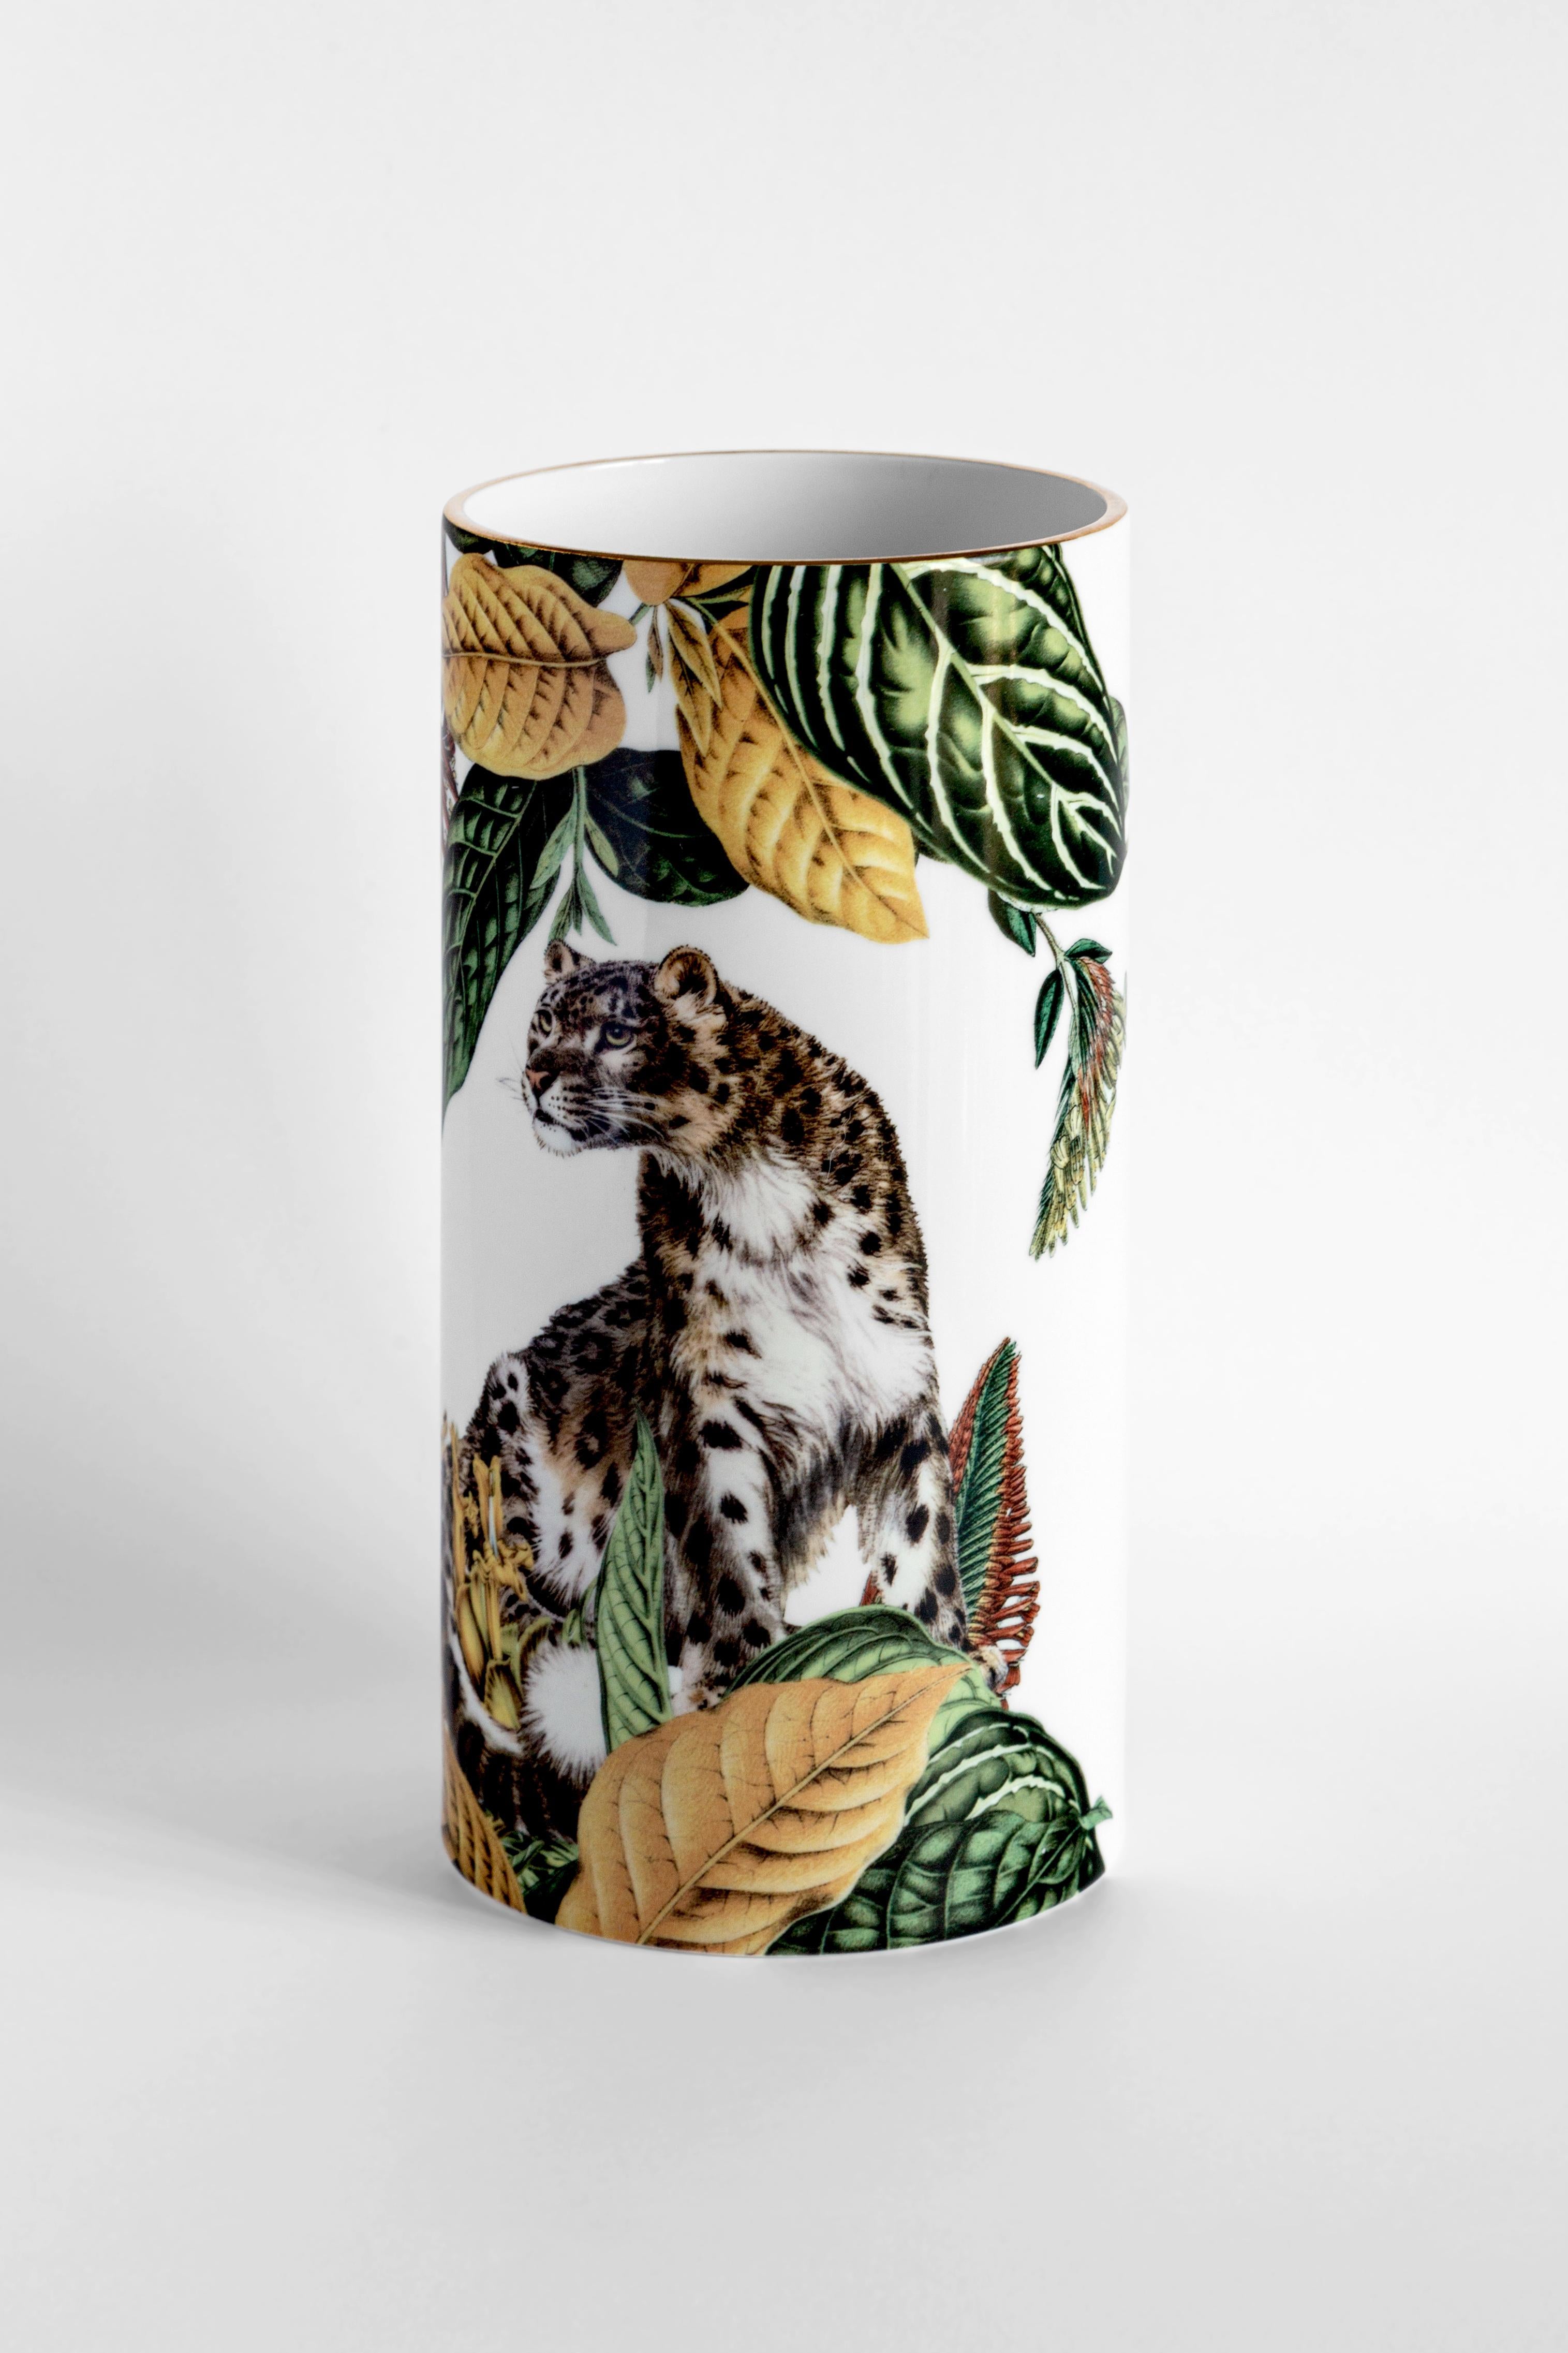 Diese prächtige Porzellanvase zeigt einen majestätischen Leoparden in beeindruckendem Realismus inmitten einer tropischen Fauna in Burgunderrot und Dunkelgrün. Als Teil der Serie Animalia aus der Grand Tour Collection des Künstlers Vito Nesta